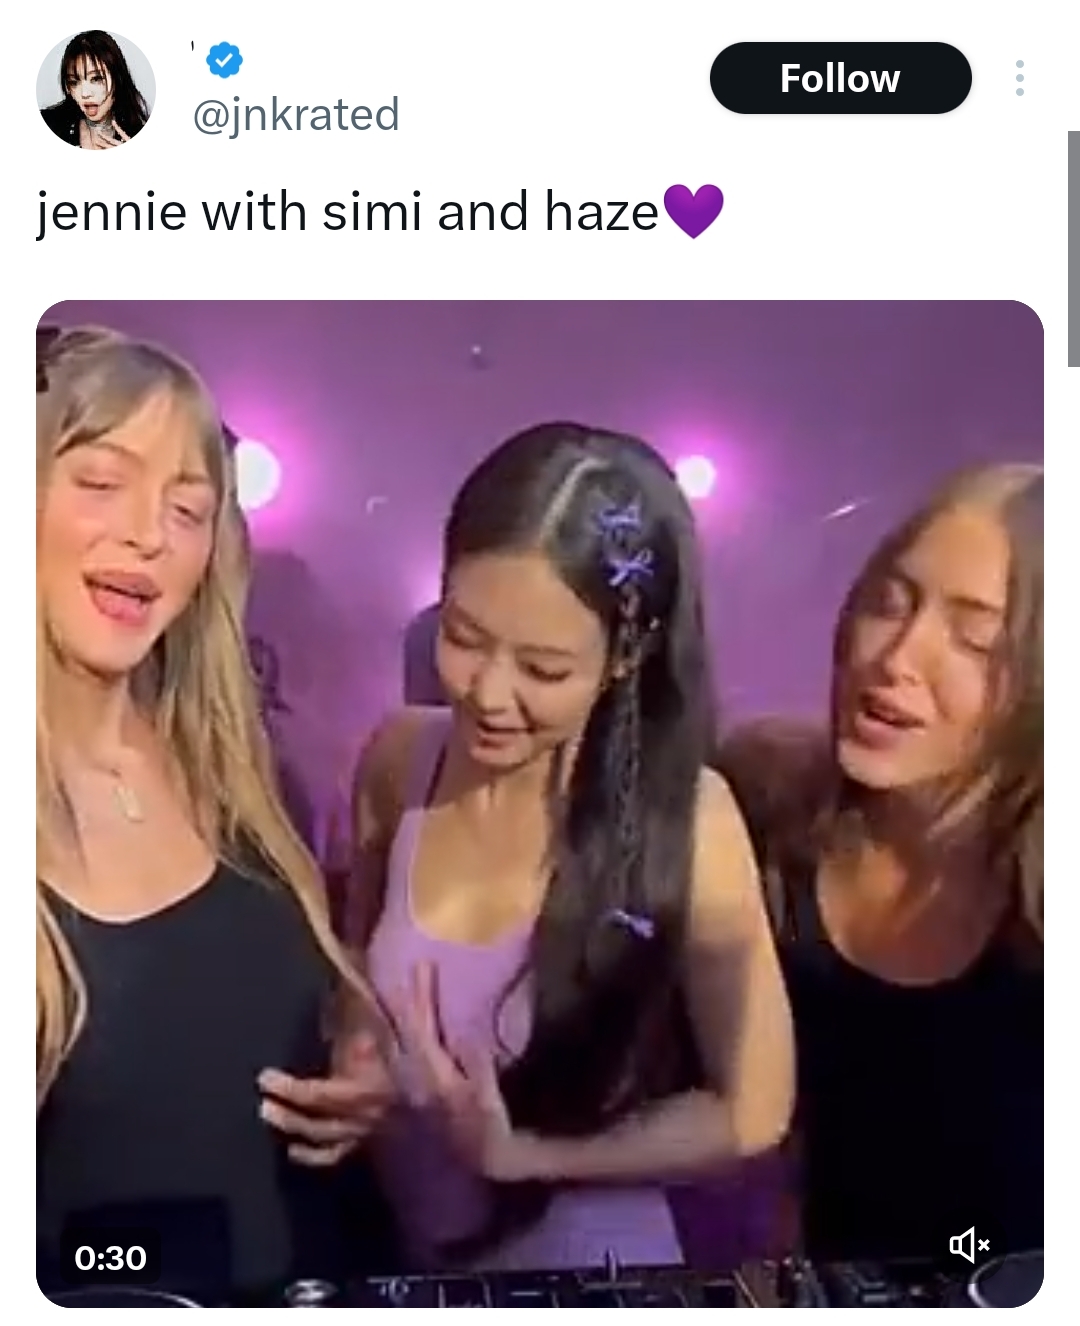 "Мы победили!" В сети появилось видео с предполагаемым взаимодействием Дженни из BLACKPINK и Чонгука из BTS на мероприятии "Calvin Klein"